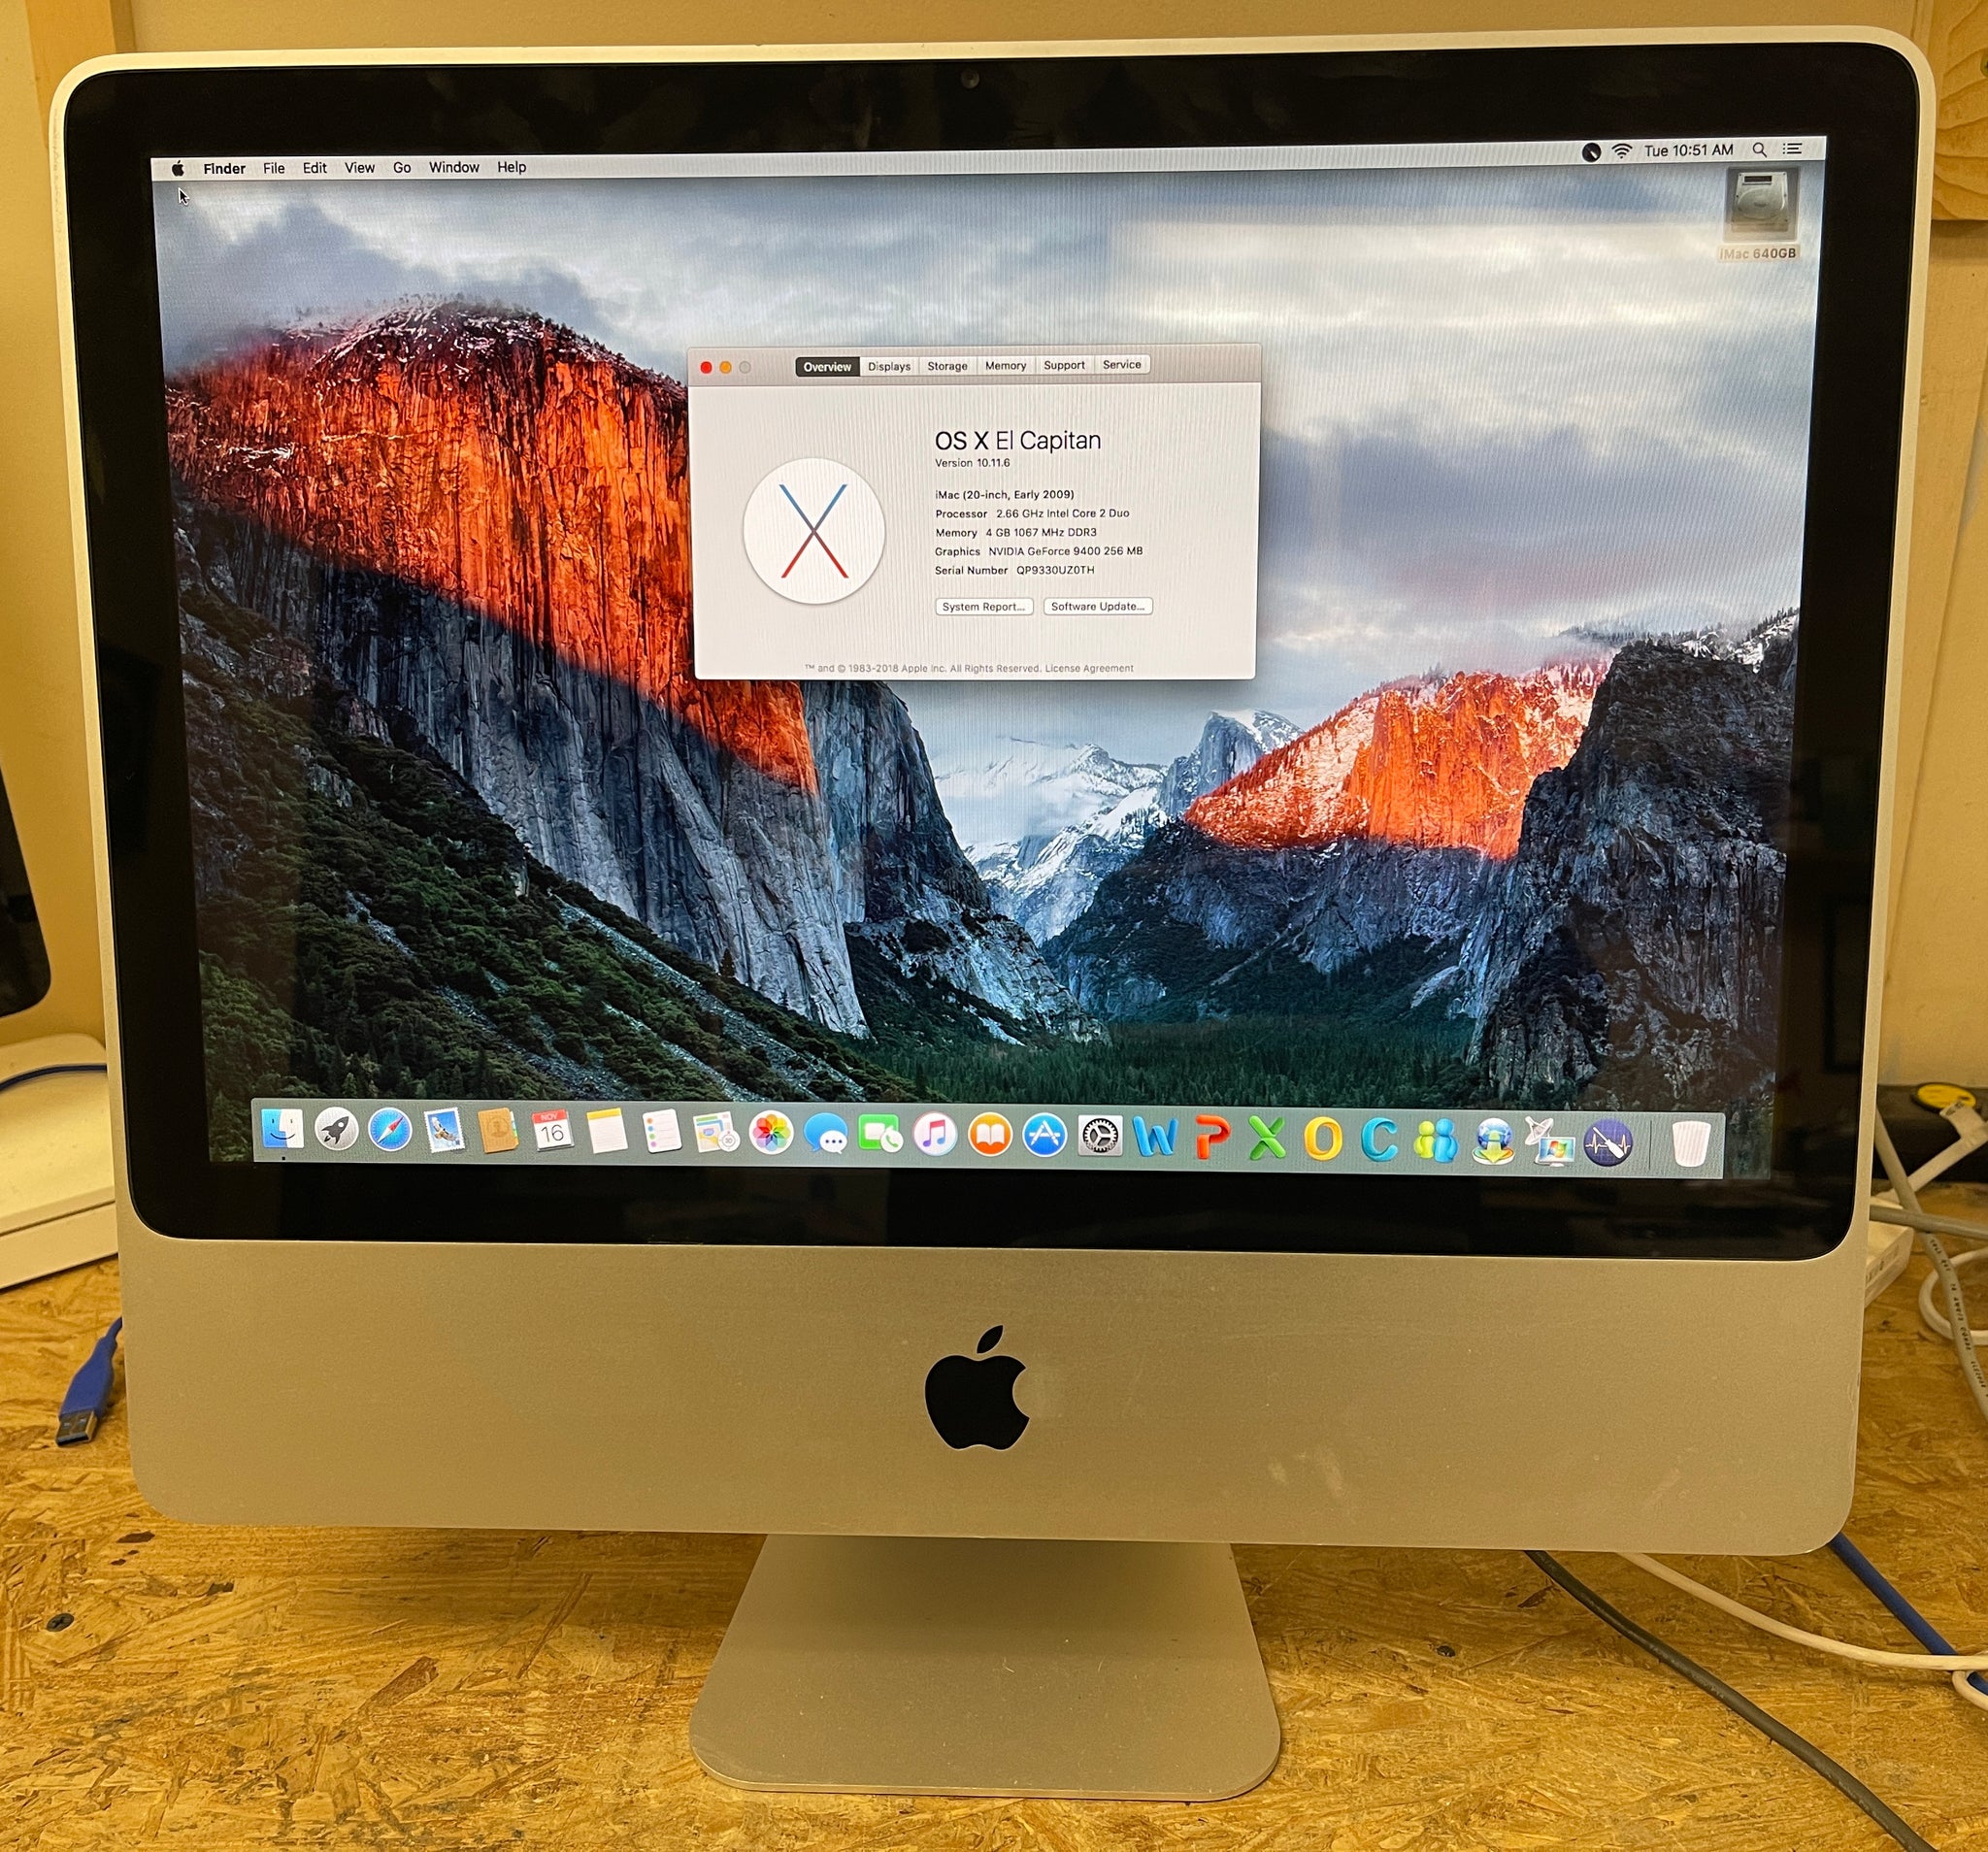 Apple アップル iMac アイマック A1224 20インチ - デスクトップ型PC